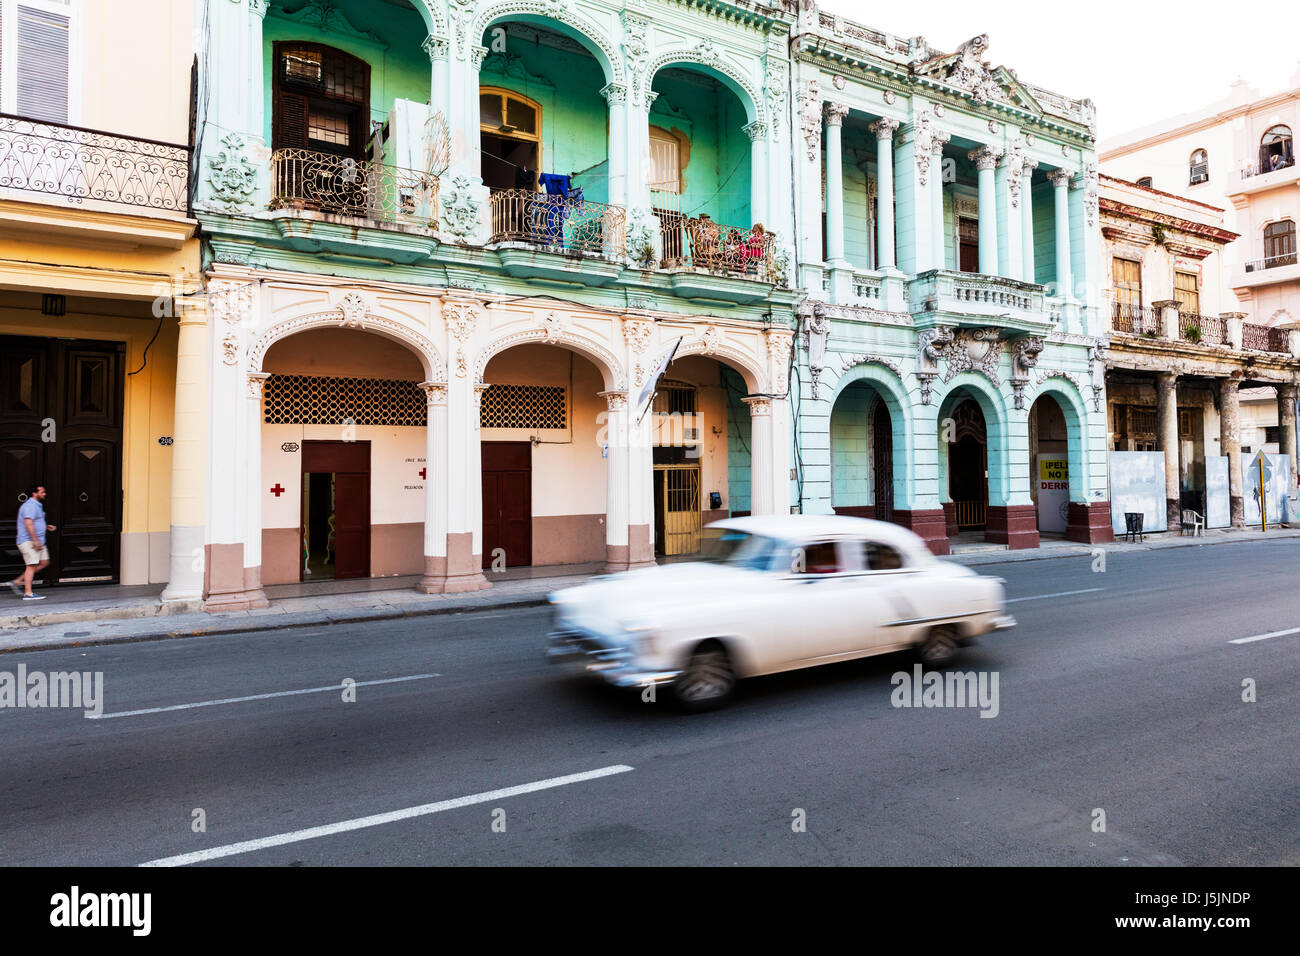 Vecchia auto classica sul Malecon Havana cuba, il Malecon La Habana Cuba, Cuba Malacon, Classic American car Il Malecon Cuba street strade di cuba Foto Stock